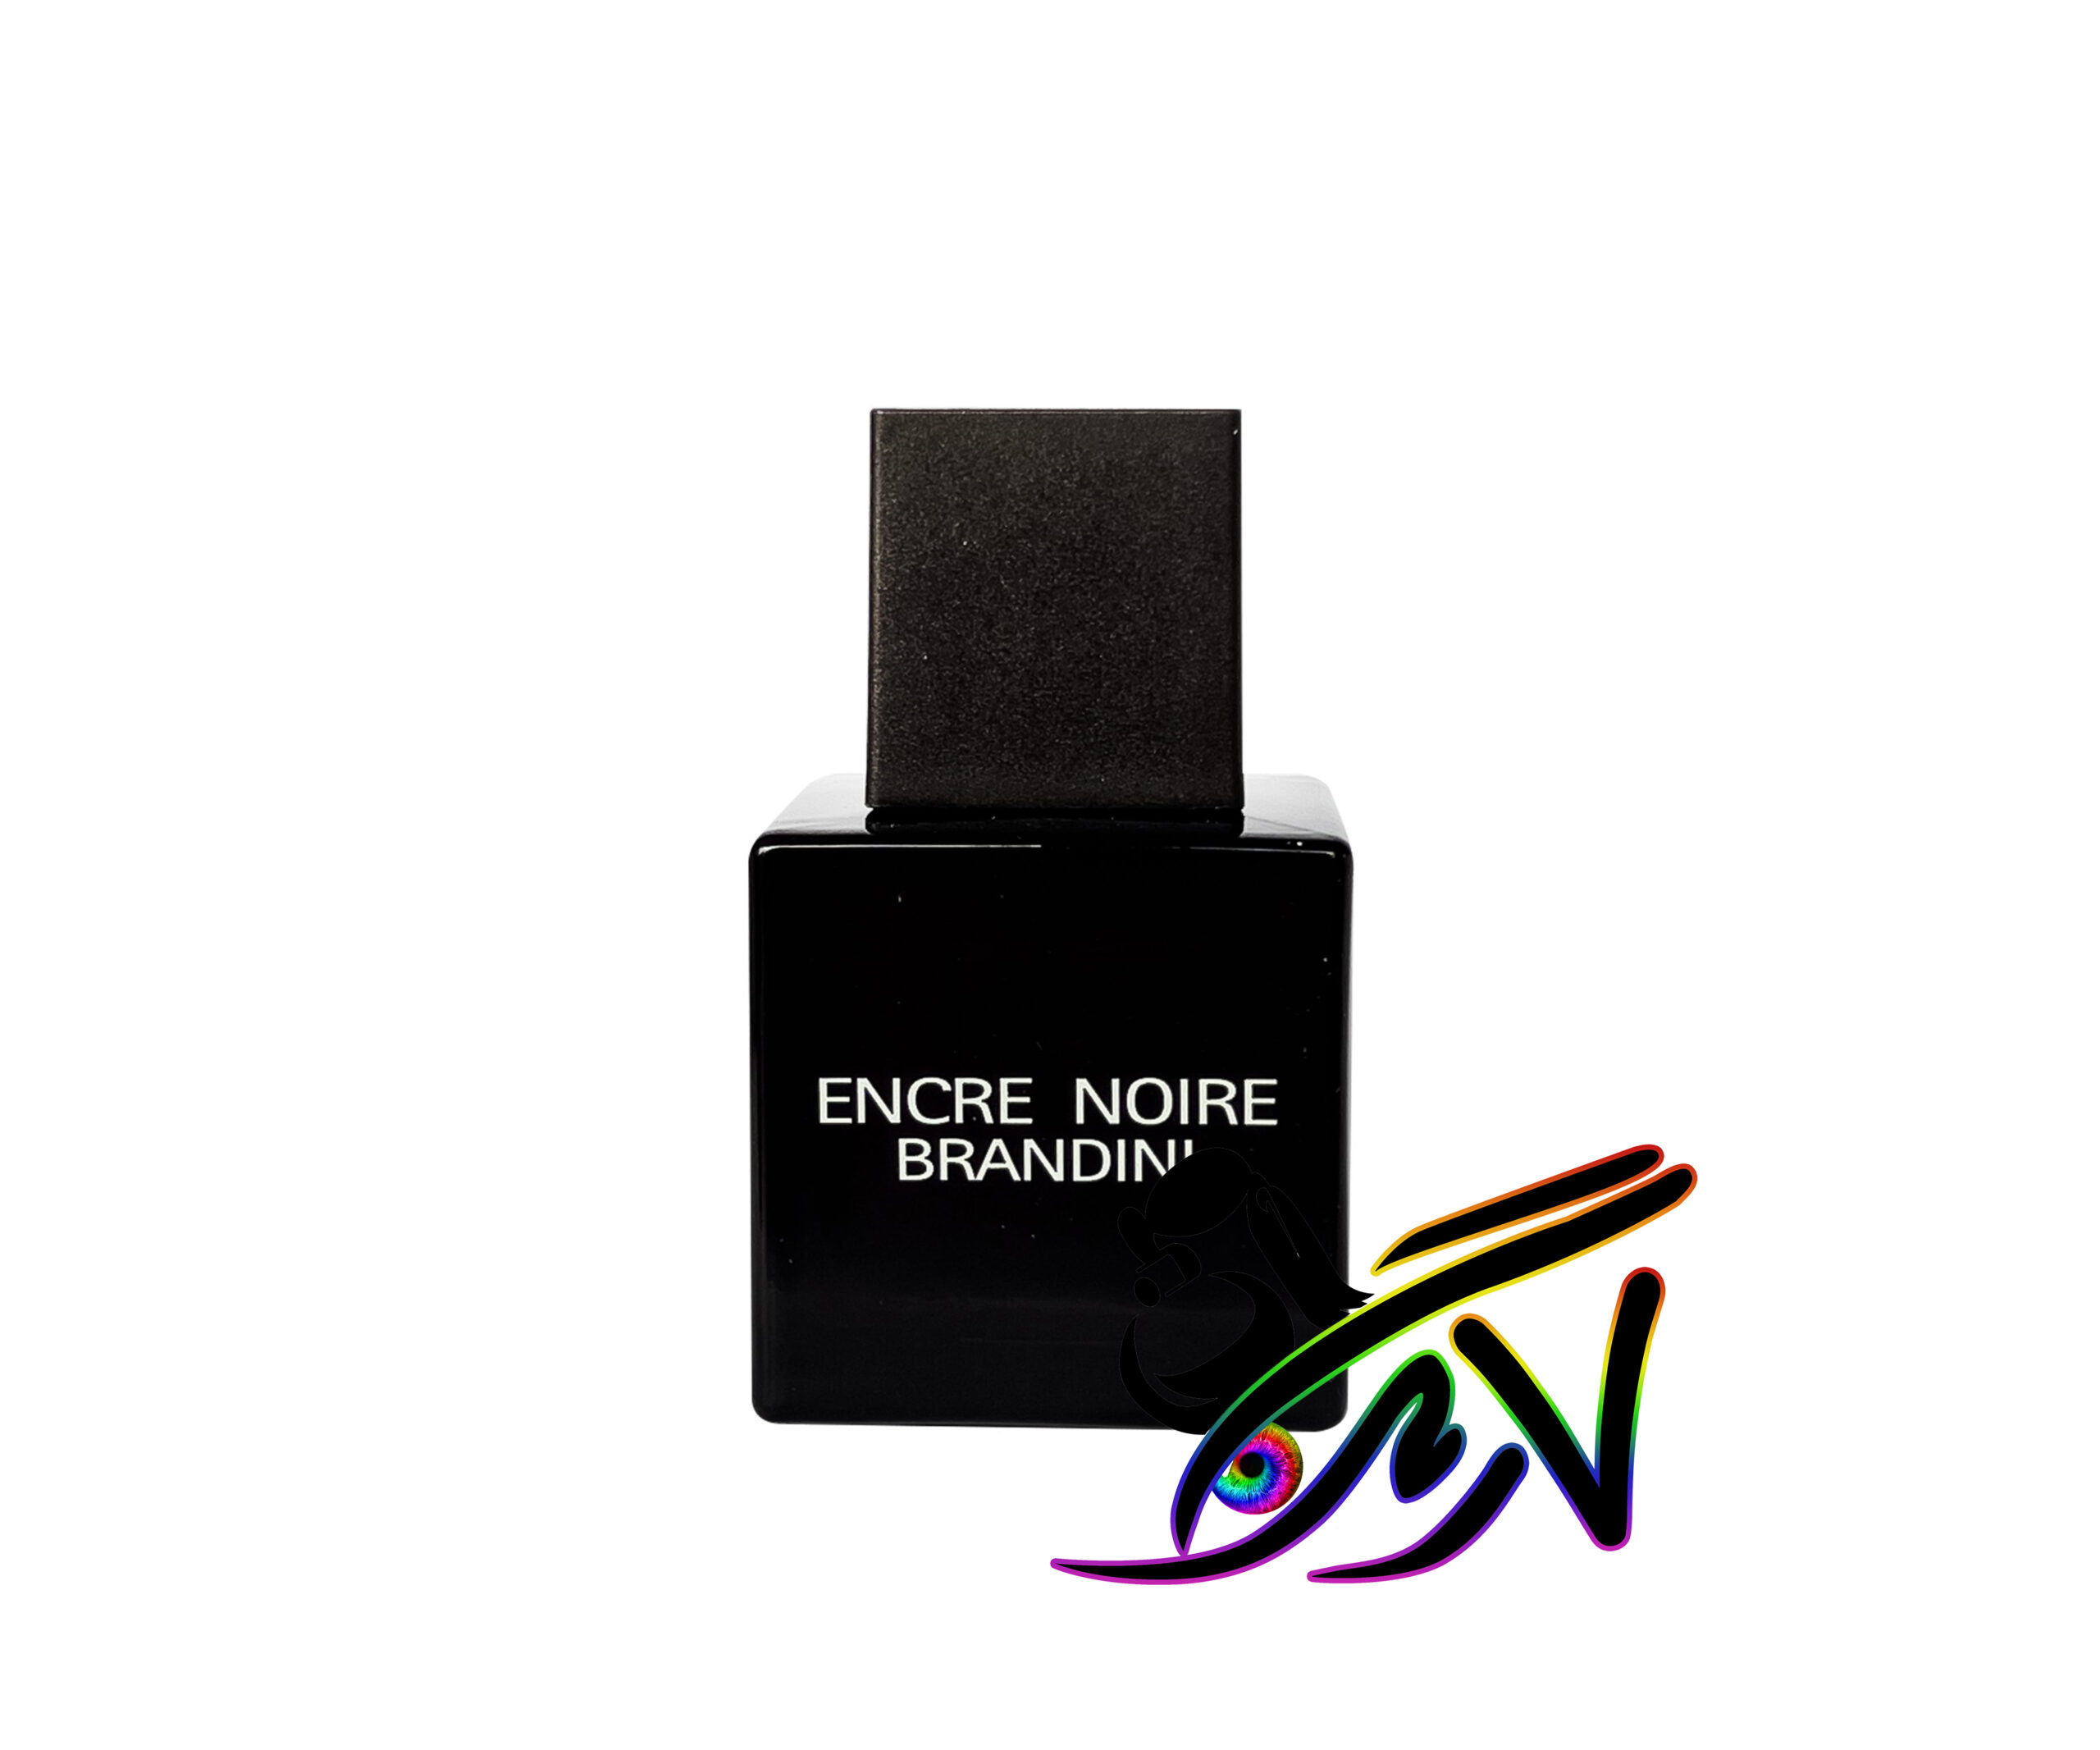 خرید ارزان عطر جیبی برندینی انکر نویر مردانه Encre Noir